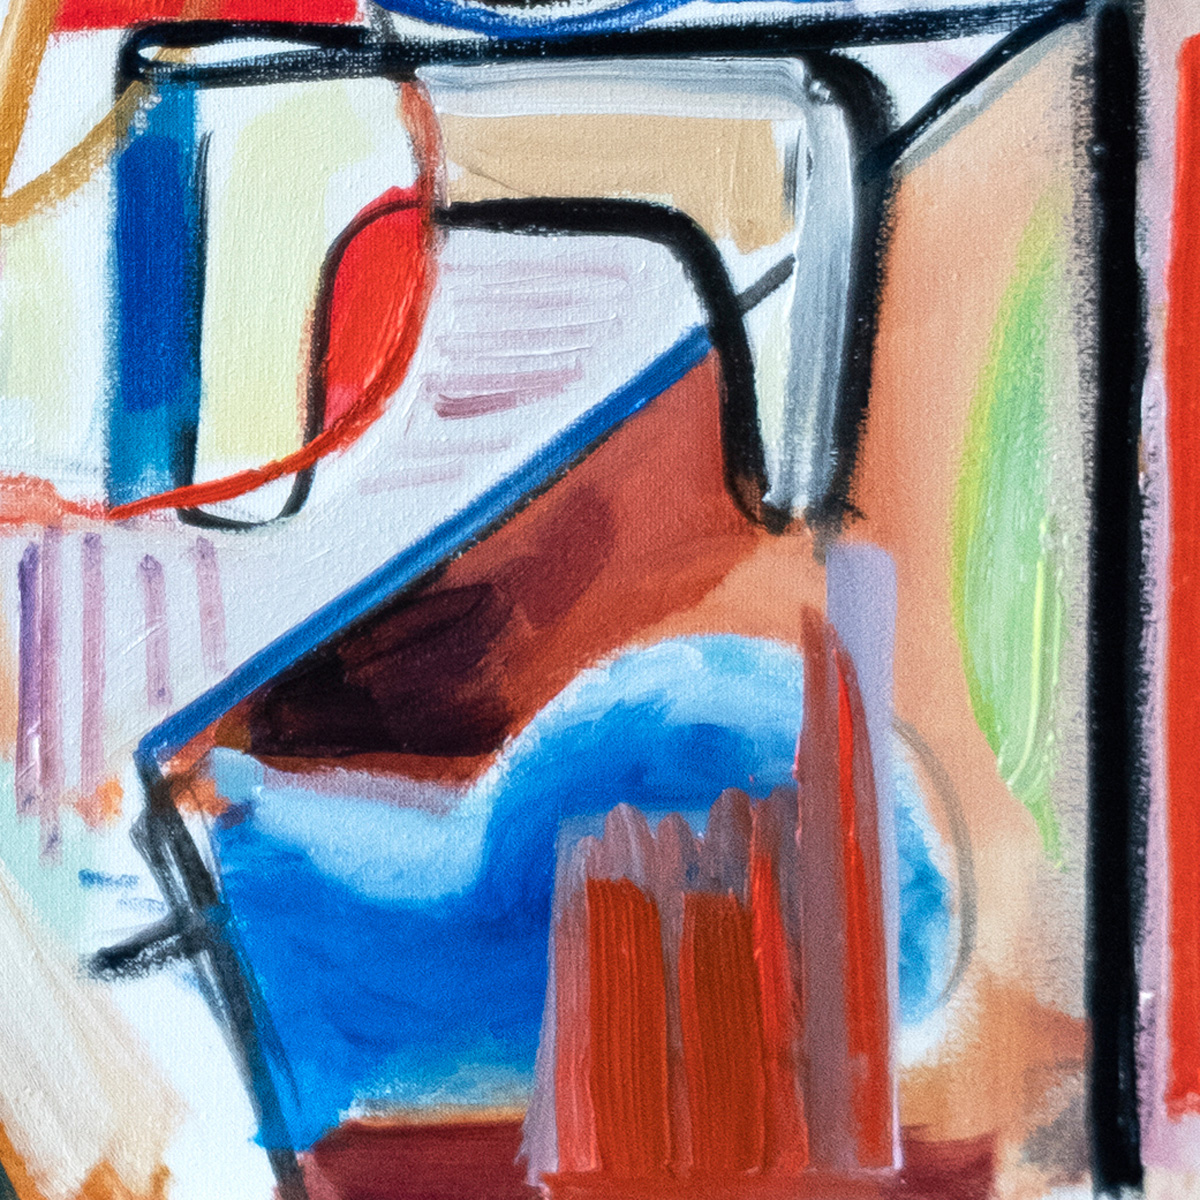 M. Cieśla: "Abstraktion, Künstler im Studio", Original/Unikat, expressionistisches Ölgemälde